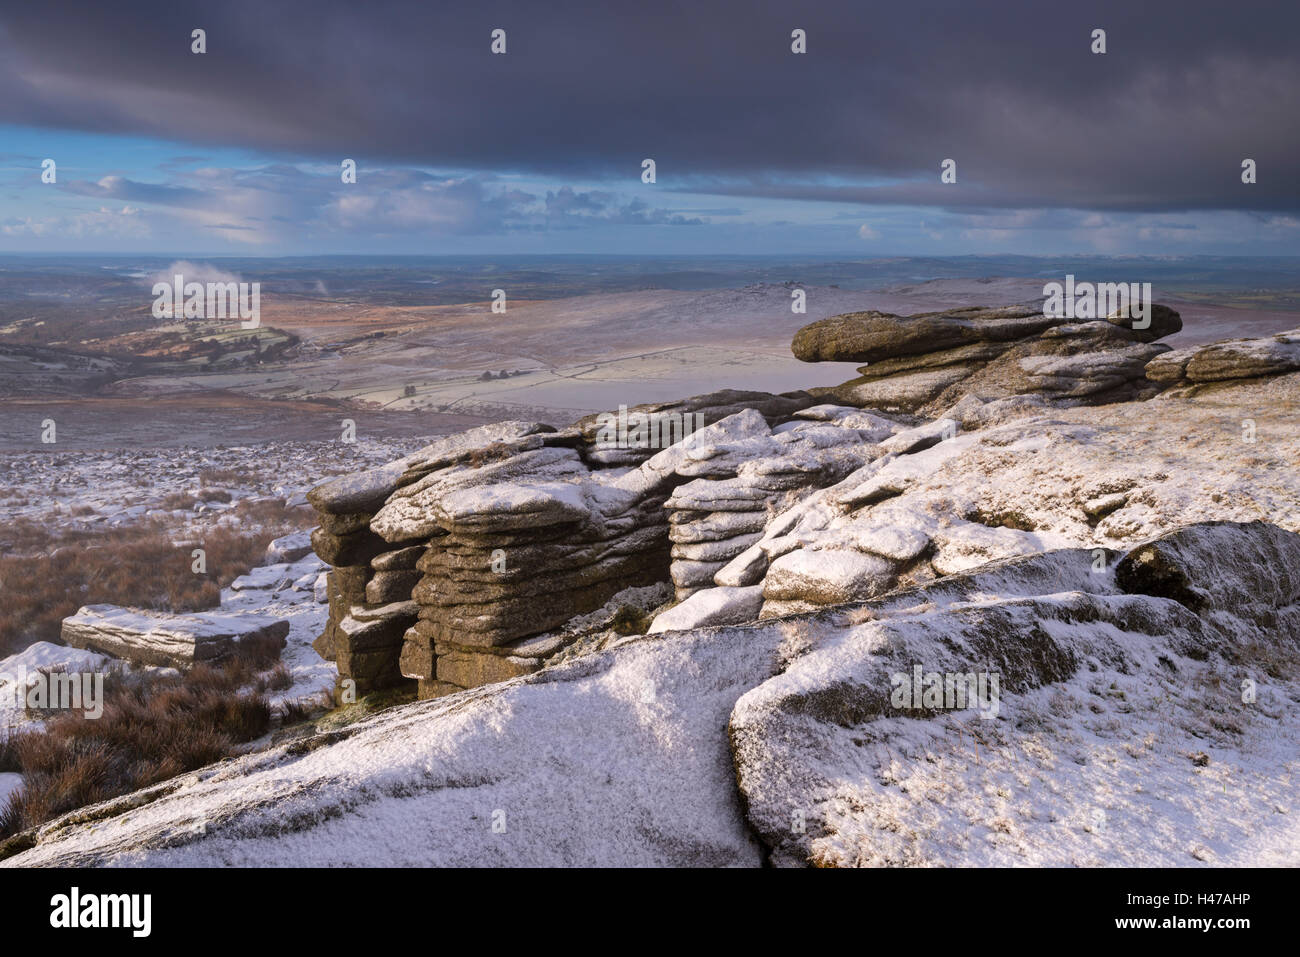 Les roches de granit couvert de neige à Grand Métis Tor, Dartmoor National Park, Devon, Angleterre. L'hiver (Janvier) 2015. Banque D'Images